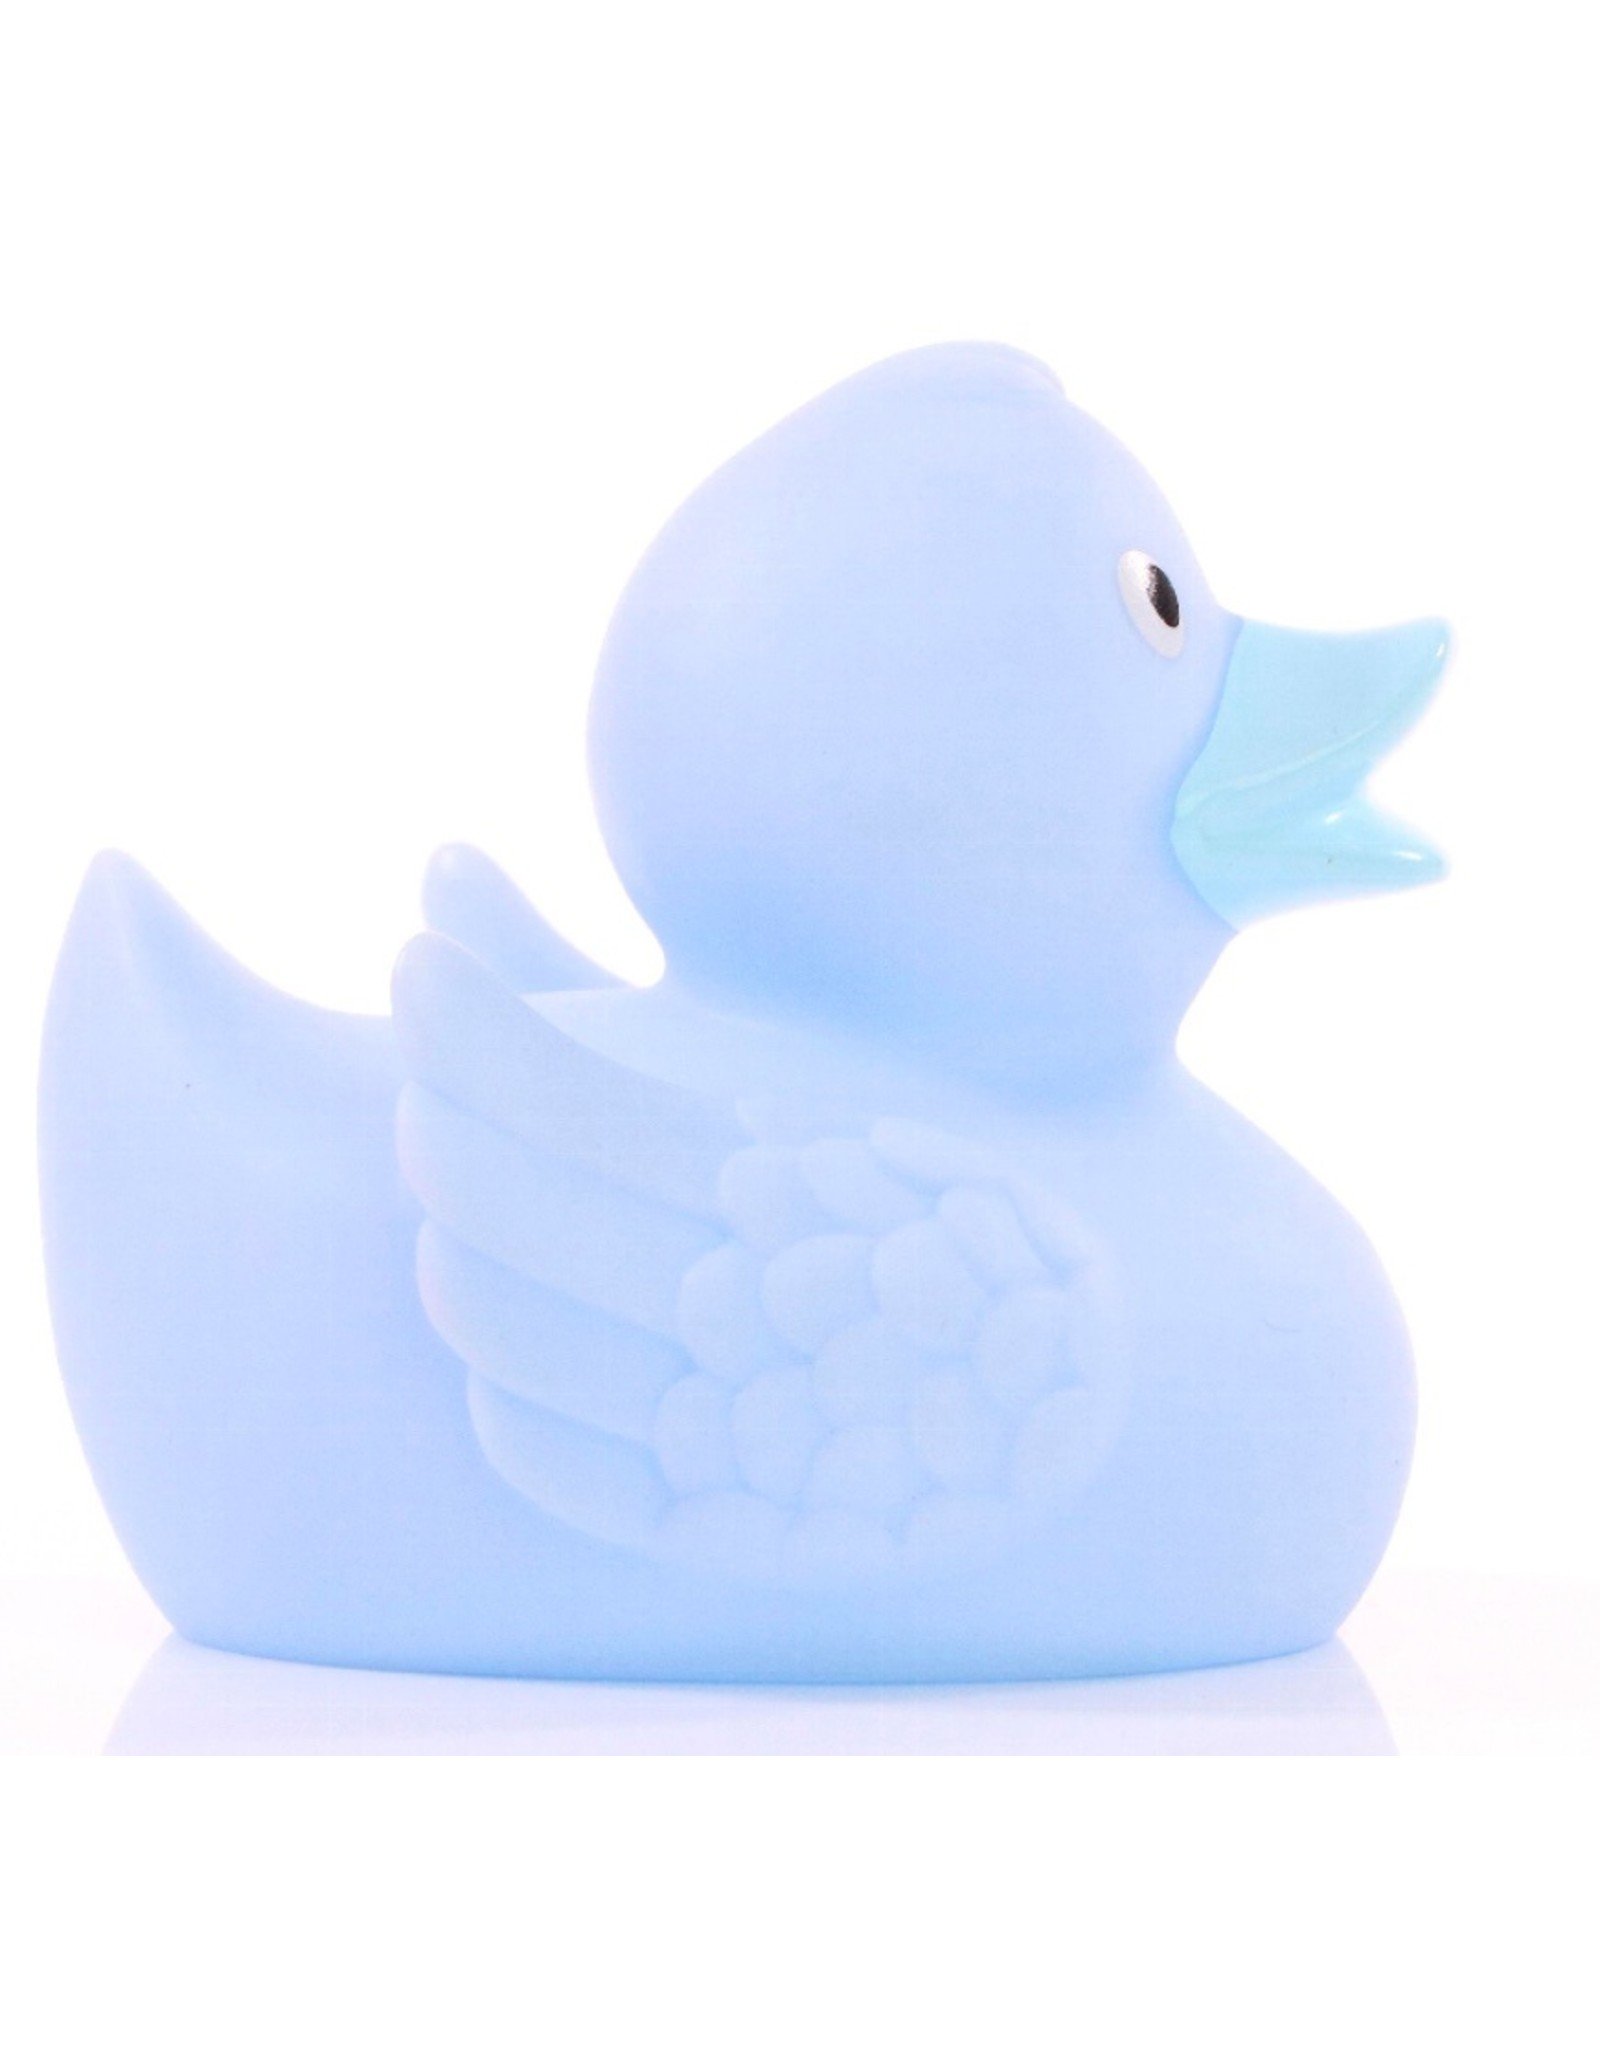 Blue Pastel Rubber Duck